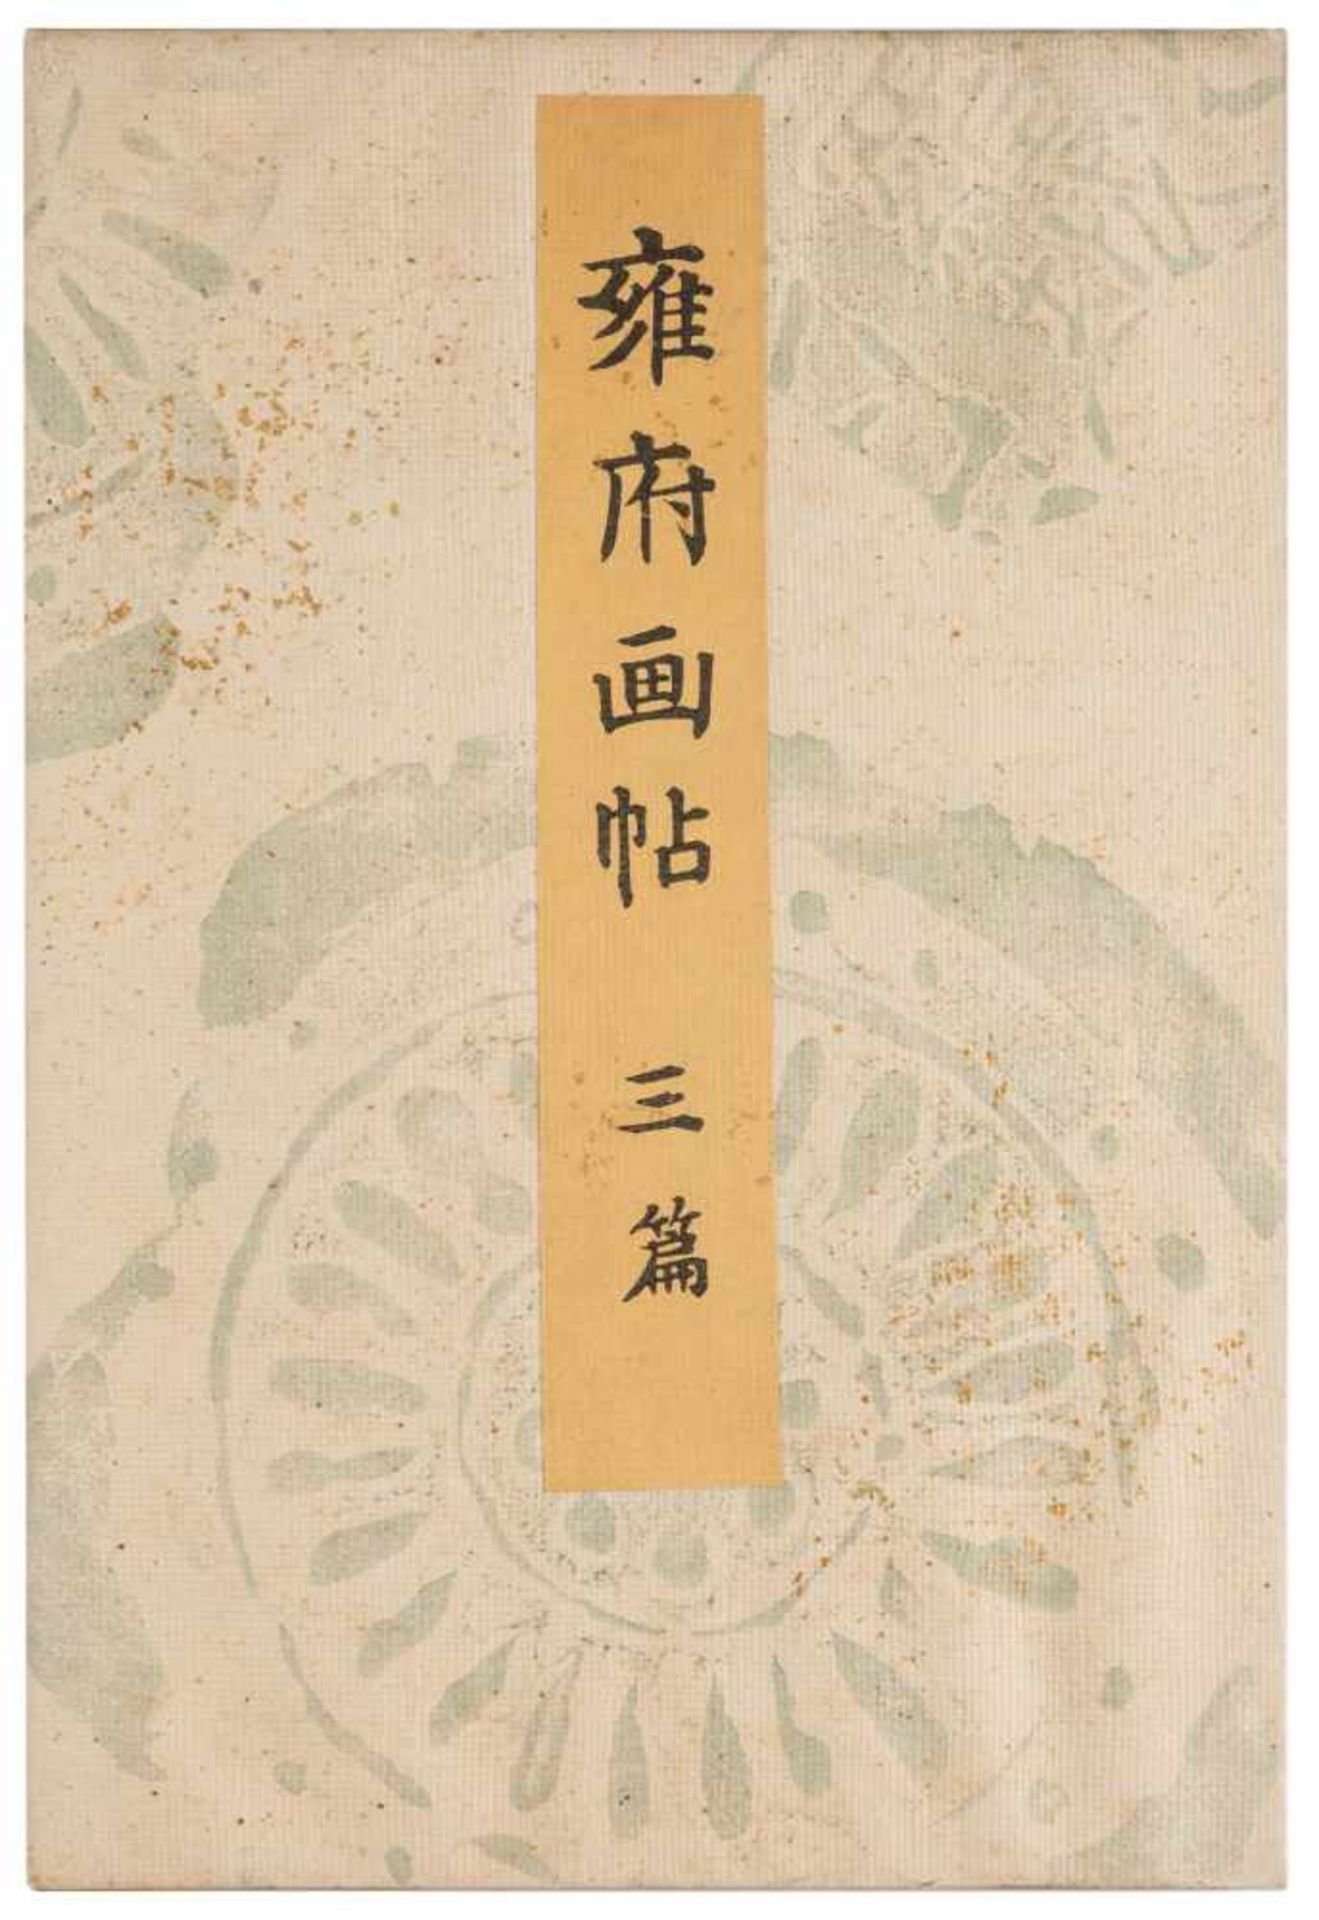 DREI BÜCHER MIT LANDSCHAFTLICHEN SZENEN Japan, 1895 Druck auf Papier. Ca. 23,5 cm x 16 cm. - Bild 6 aus 7